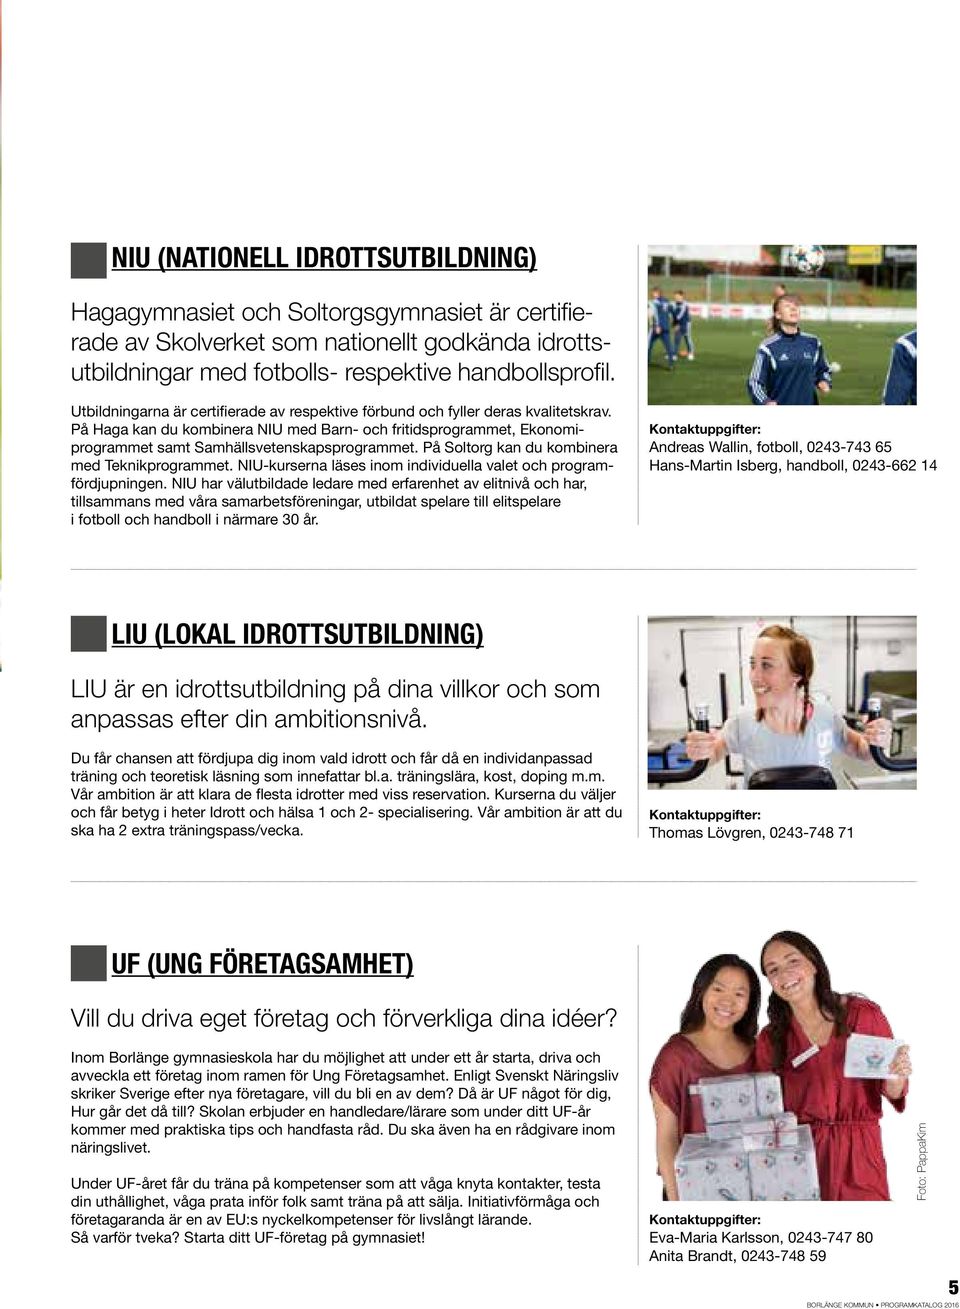 På Soltorg kan du kombinera med Teknikprogrammet. NIU-kurserna läses inom individuella valet och programfördjupningen.